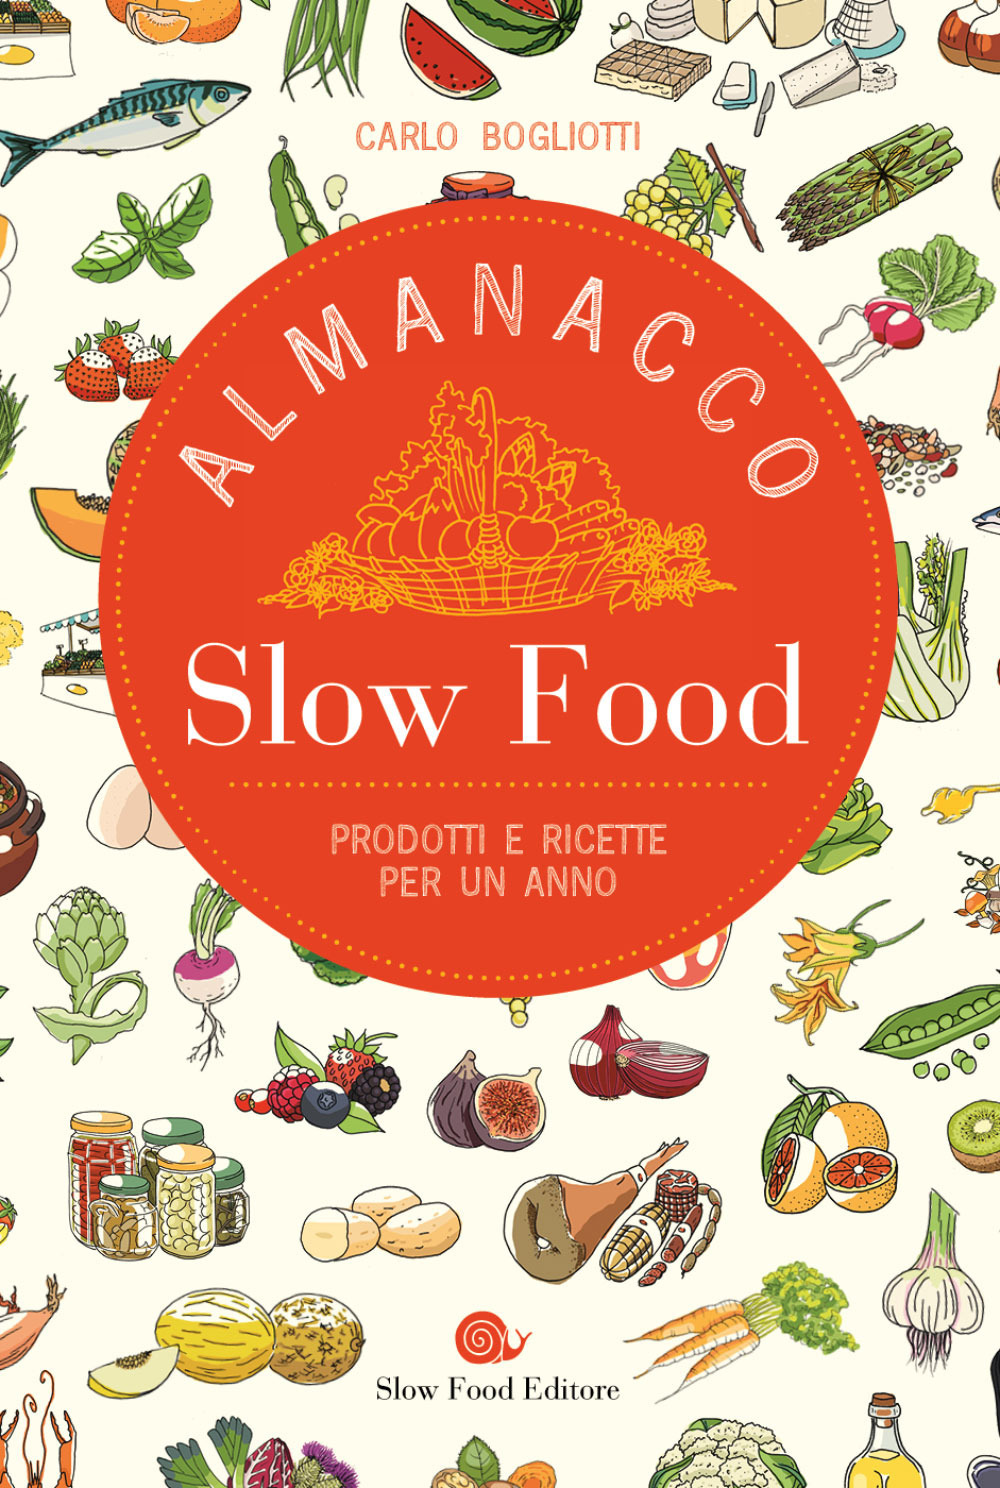 Almanacco Slow Food. Prodotti e ricette di settimana in settimana